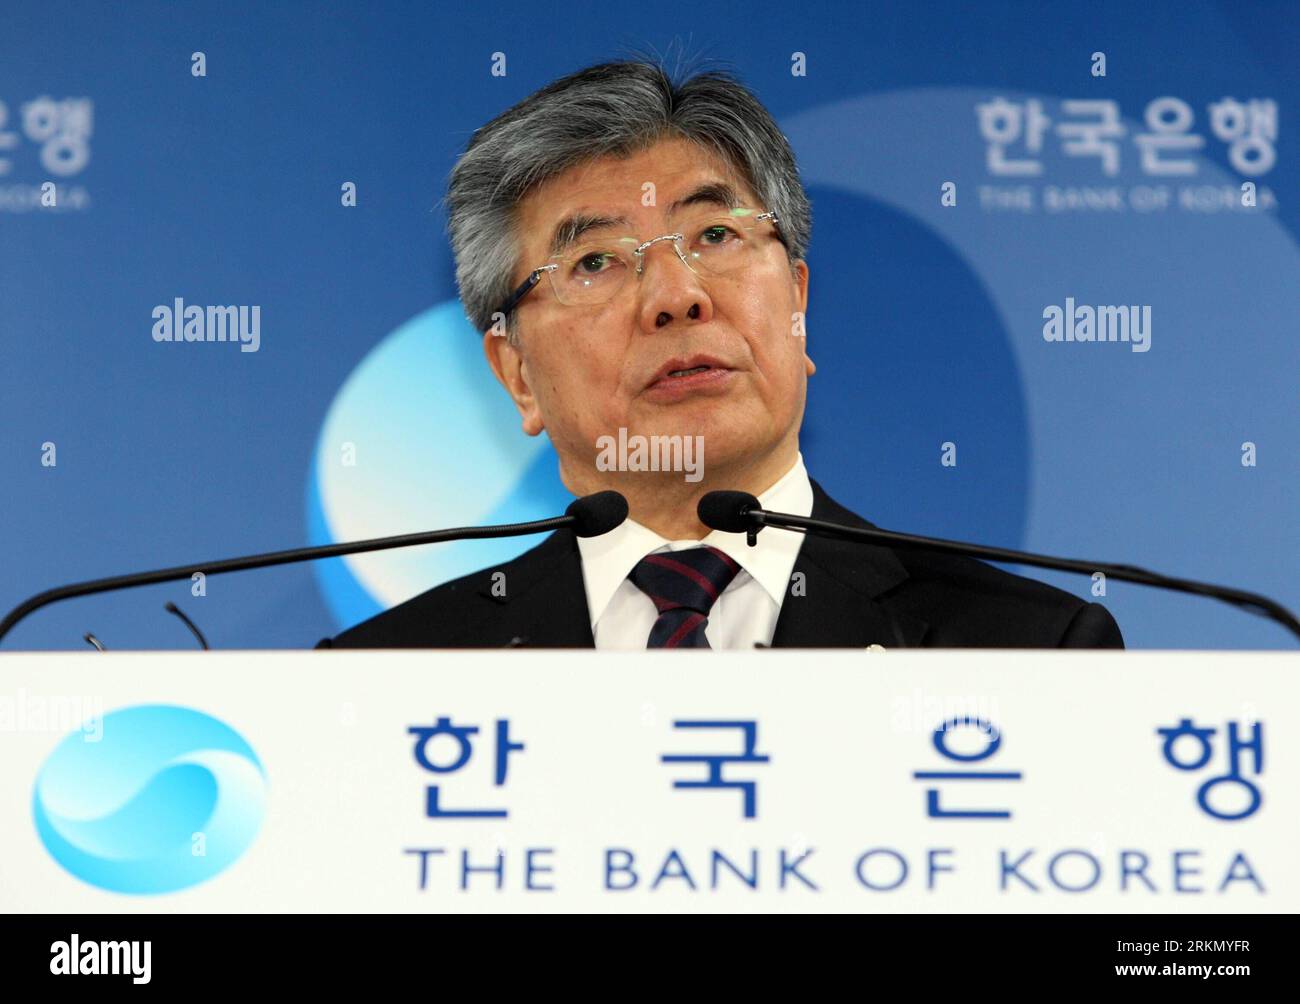 Bildnummer: 56874565 Datum: 13.01.2012 Copyright: imago/Xinhua (120113) -- SEOUL, 13. Januar 2012 (Xinhua) -- Kim Choong-soo, Gouverneur der Bank of Korea (BOK), sprach während der ersten Pressekonferenz im Jahr 2012, nachdem er an der monatlichen Sitzung des Währungsausschusses am 13. Januar 2012 in Seoul, der Hauptstadt Südkoreas, teilgenommen hatte. Die BOK ließ ihren Referenzzinssatz am Freitag unverändert bei 3,25 Prozent und behielt ihren Kurs wegen der anhaltenden Unsicherheiten im in- und Ausland einen siebten Monat in Folge. (Xinhua/Park Jin Hee) (yc) SÜDKOREA-FINANCE-ECONOMY-BANK PUBLICATIONxNOTx Stockfoto